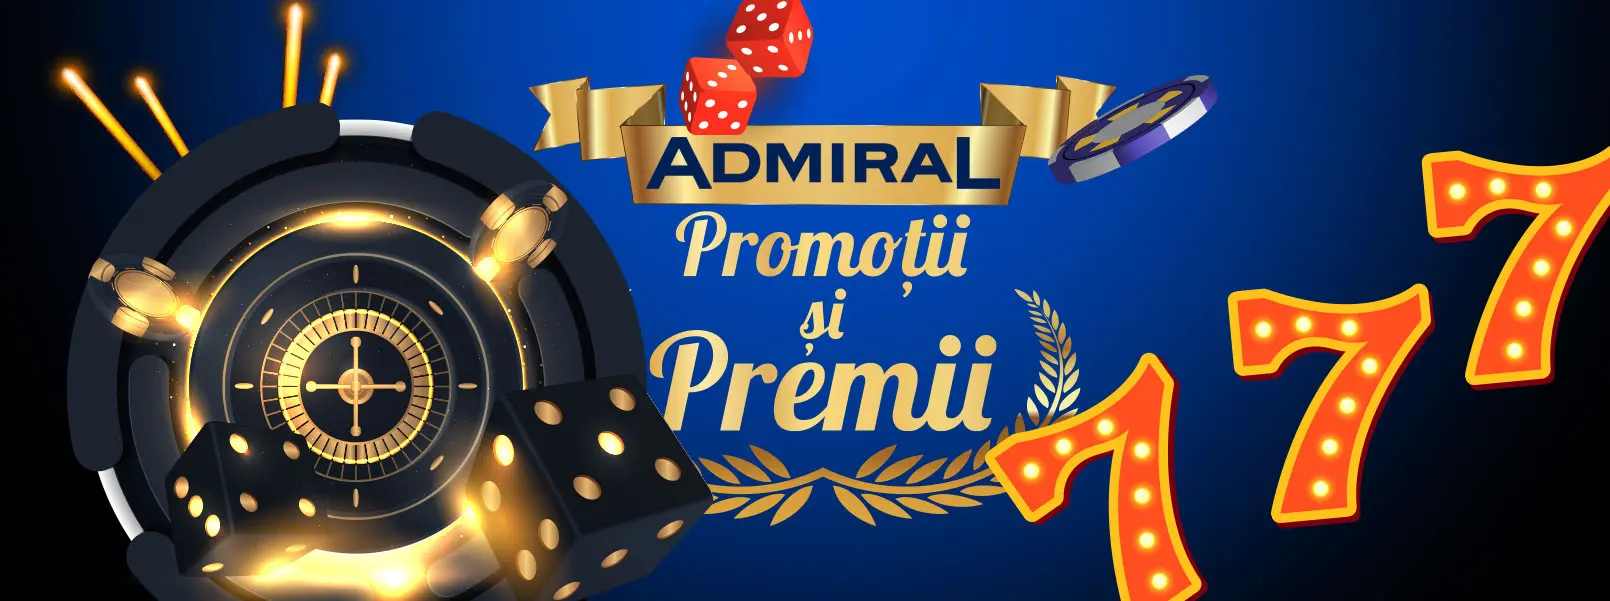 logo promotii admiral cu premii